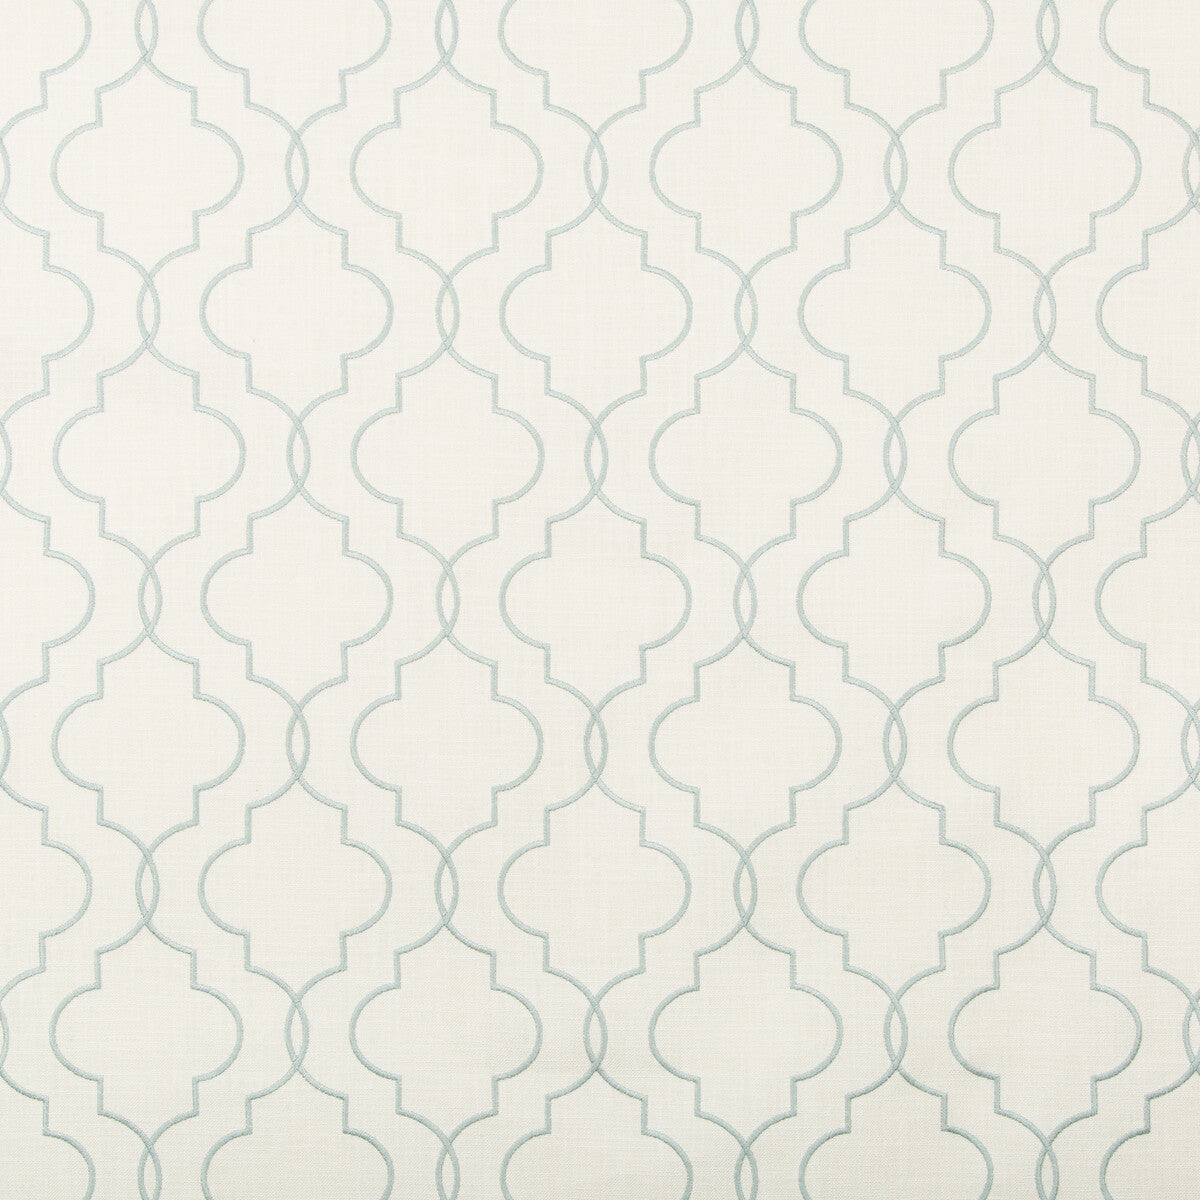 Kravet Basics fabric in 35794-15 color - pattern 35794.15.0 - by Kravet Basics